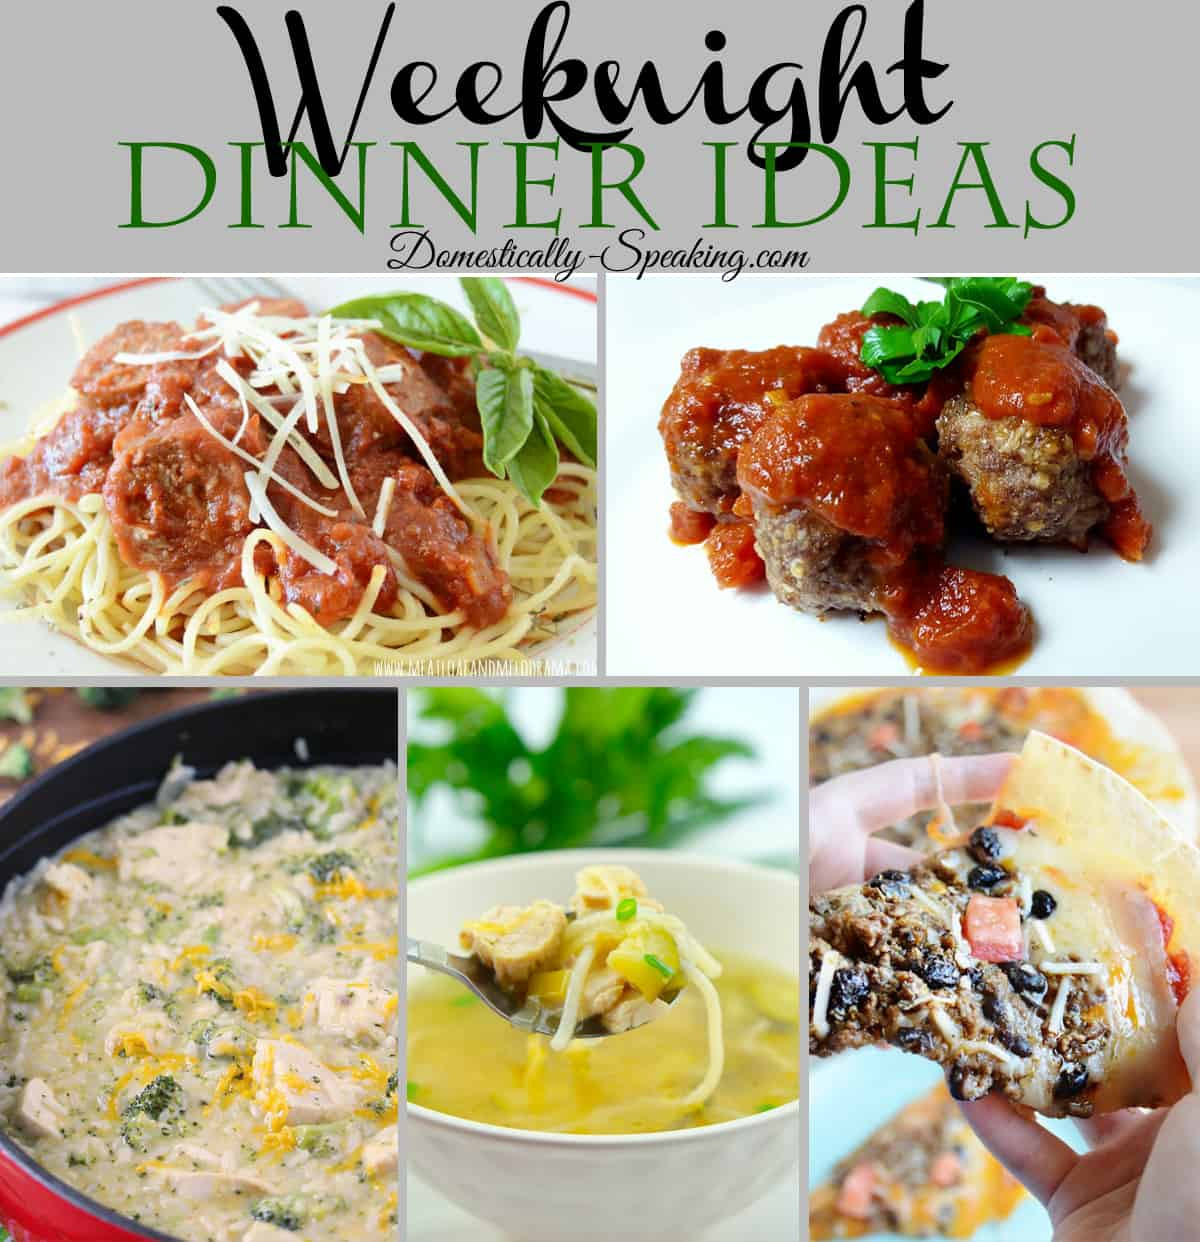 Weeknight Dinners Ideas
 Weeknight Dinner Ideas Domestically Speaking